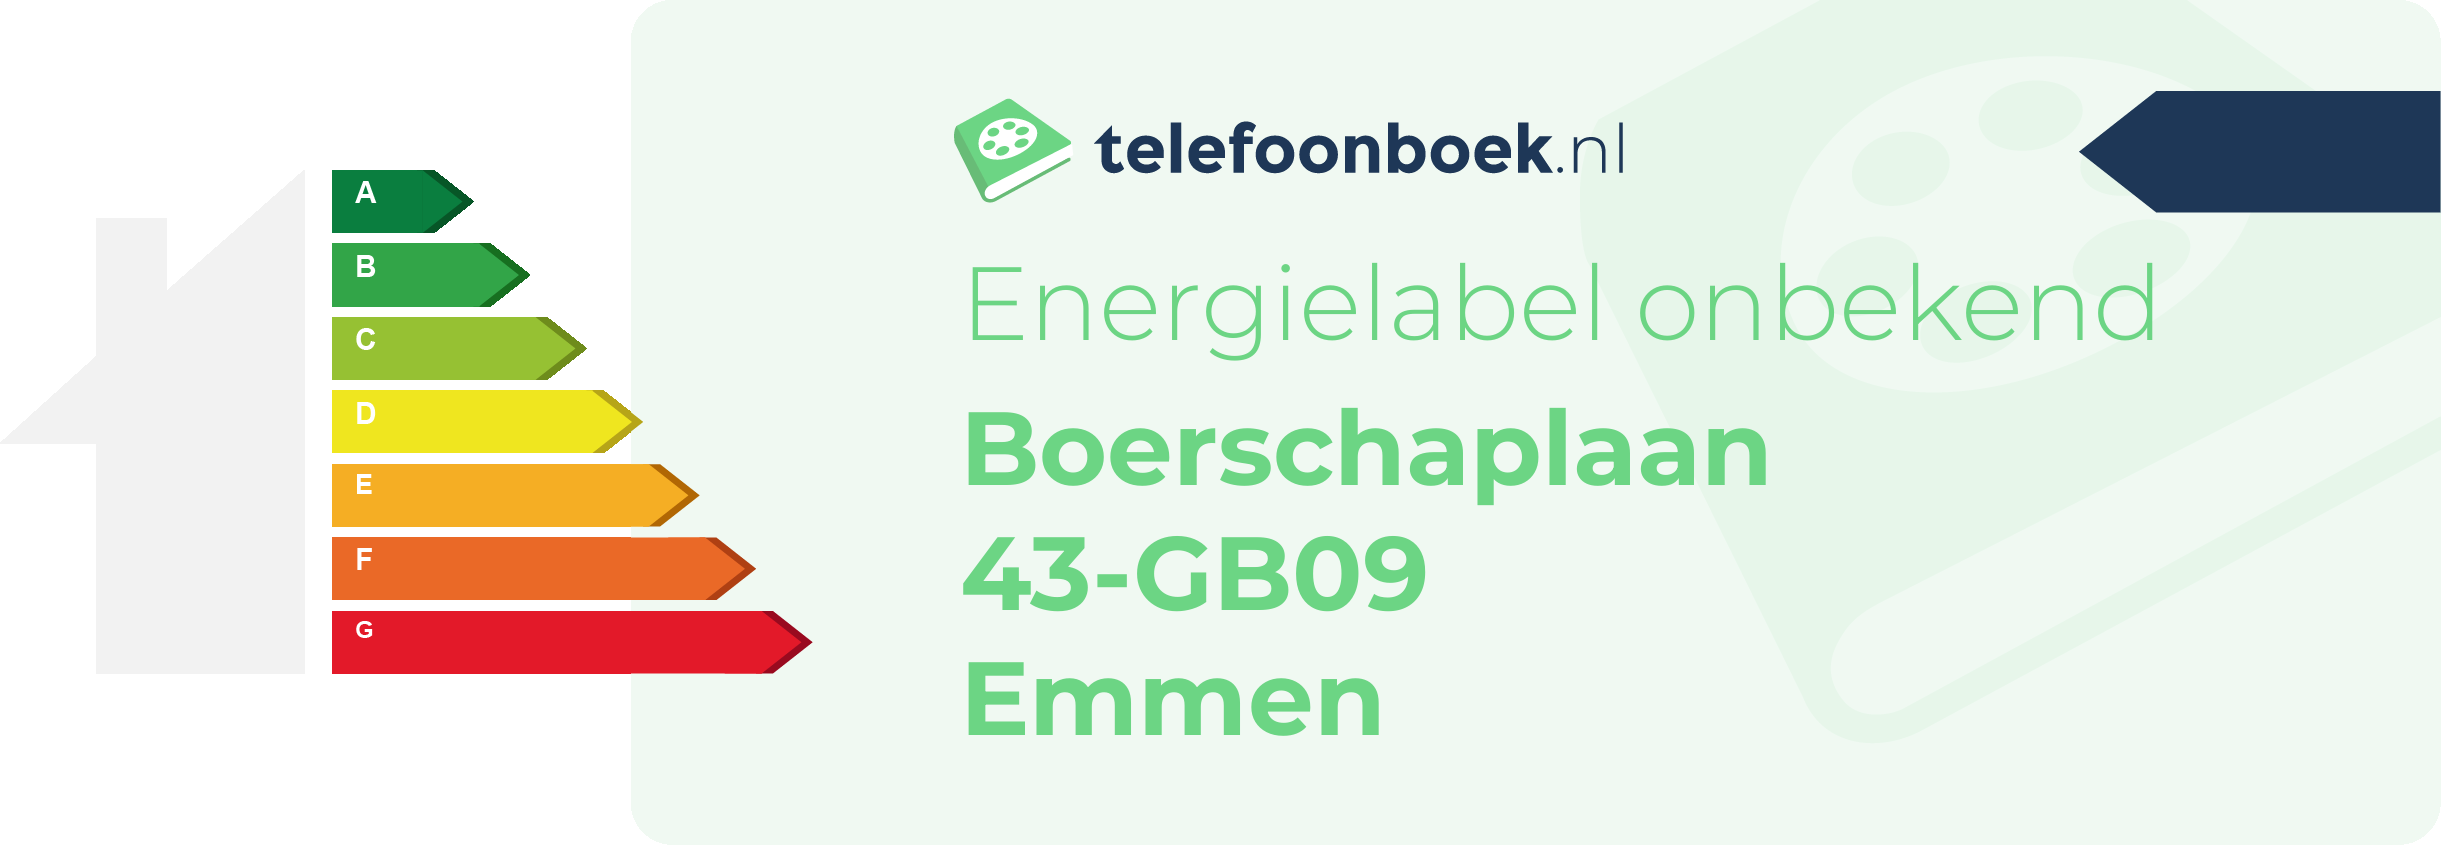 Energielabel Boerschaplaan 43-GB09 Emmen